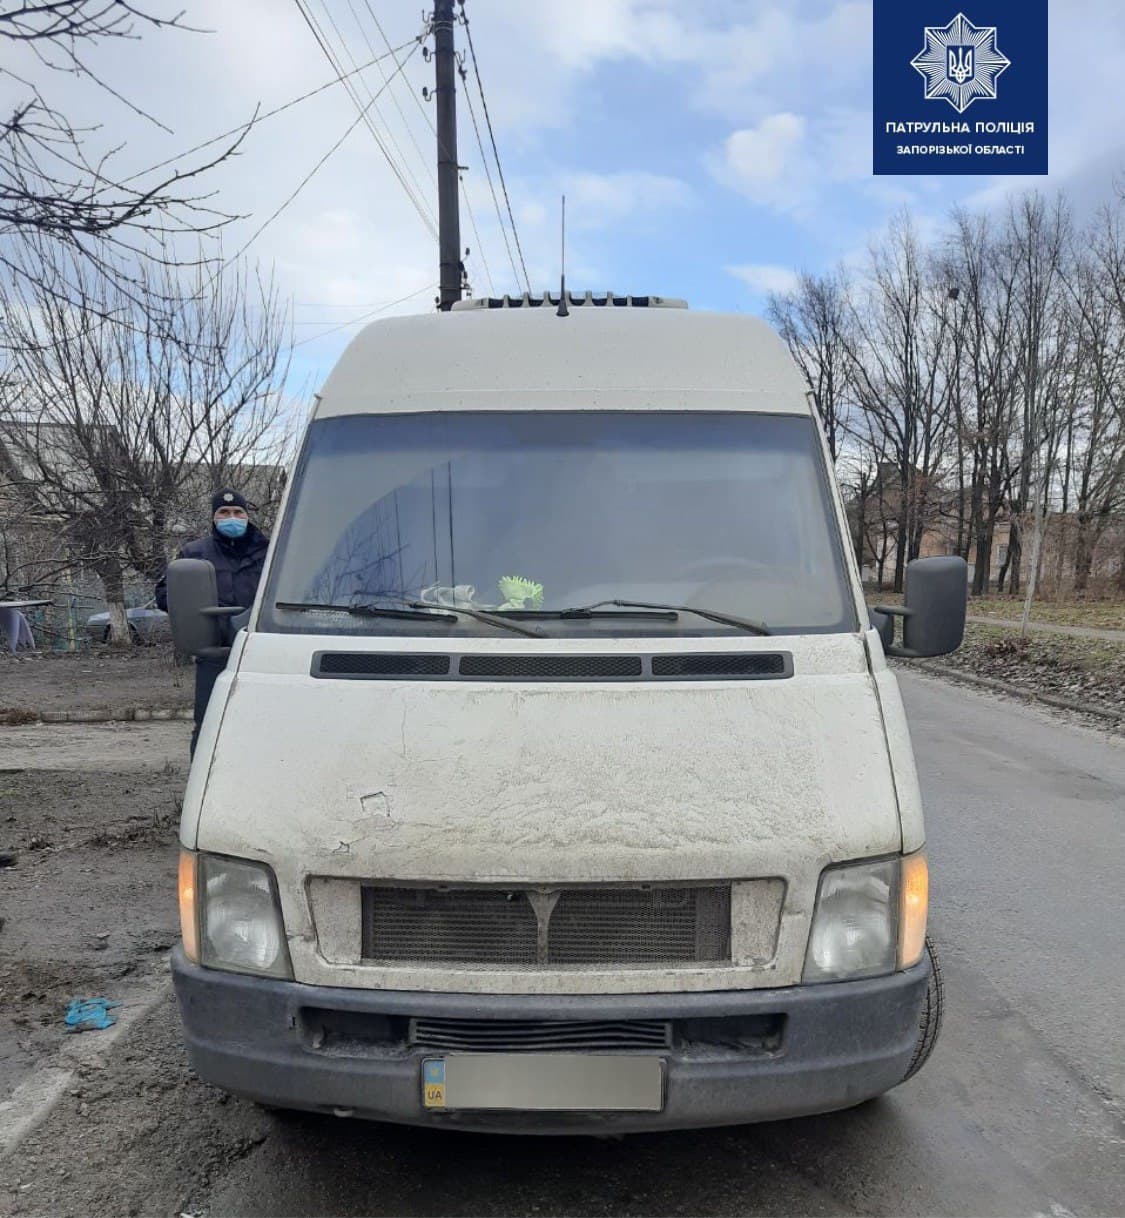 В Запорожье правоохранители обнаружили микроавтобус с ввареными номерами (ФОТО)